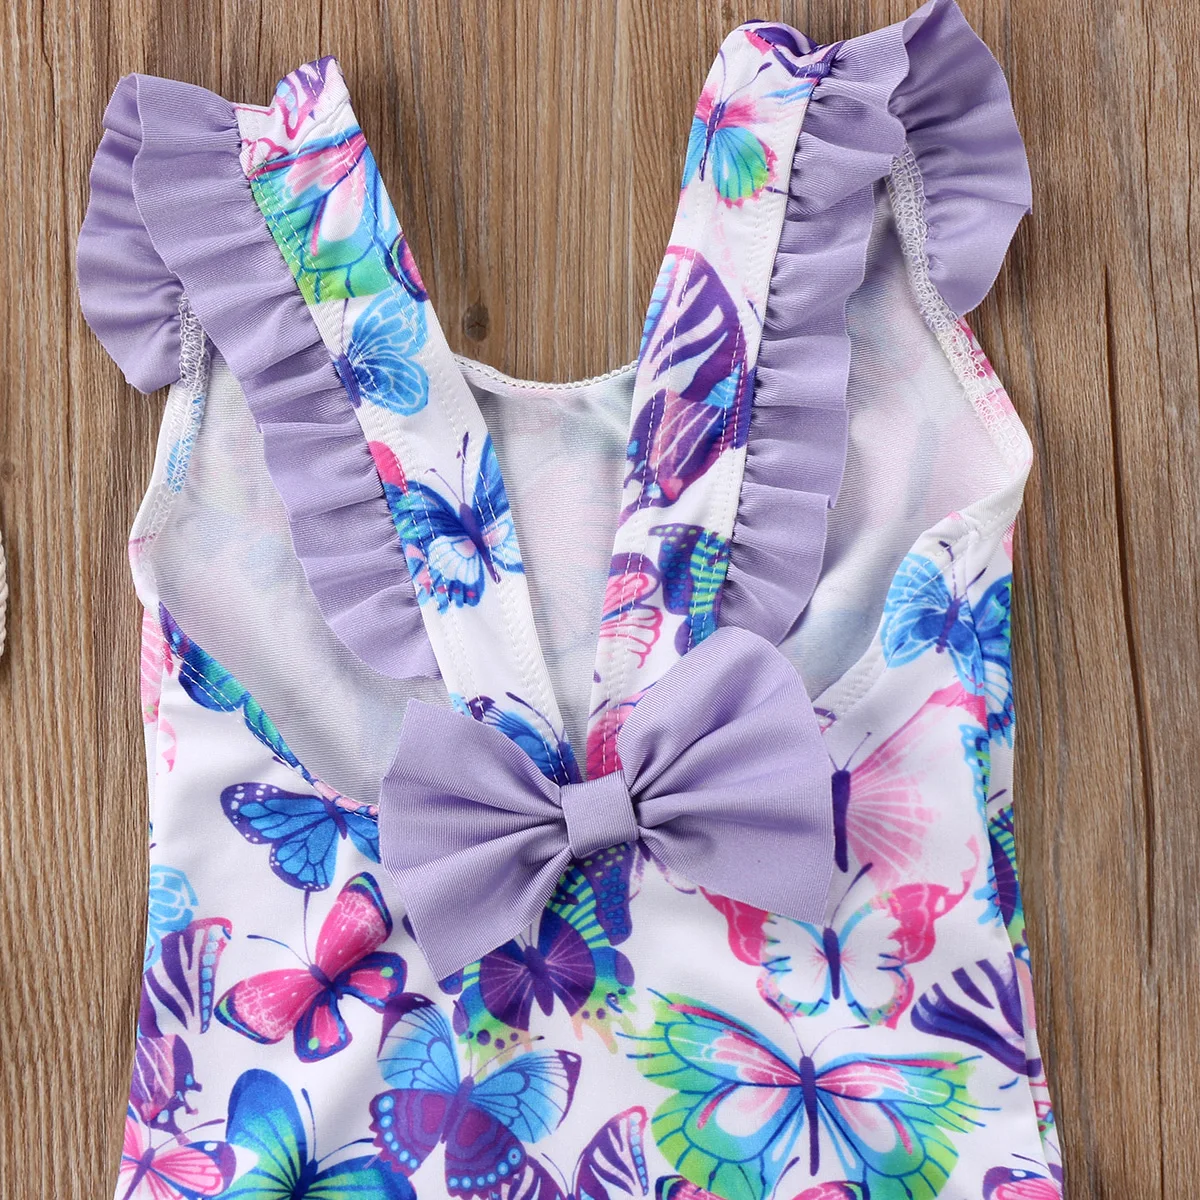 Летний детский купальный костюм с бабочками, цветами, оборками и бантом для девочек, купальный костюм, купальный костюм для От 6 месяцев до 5 лет